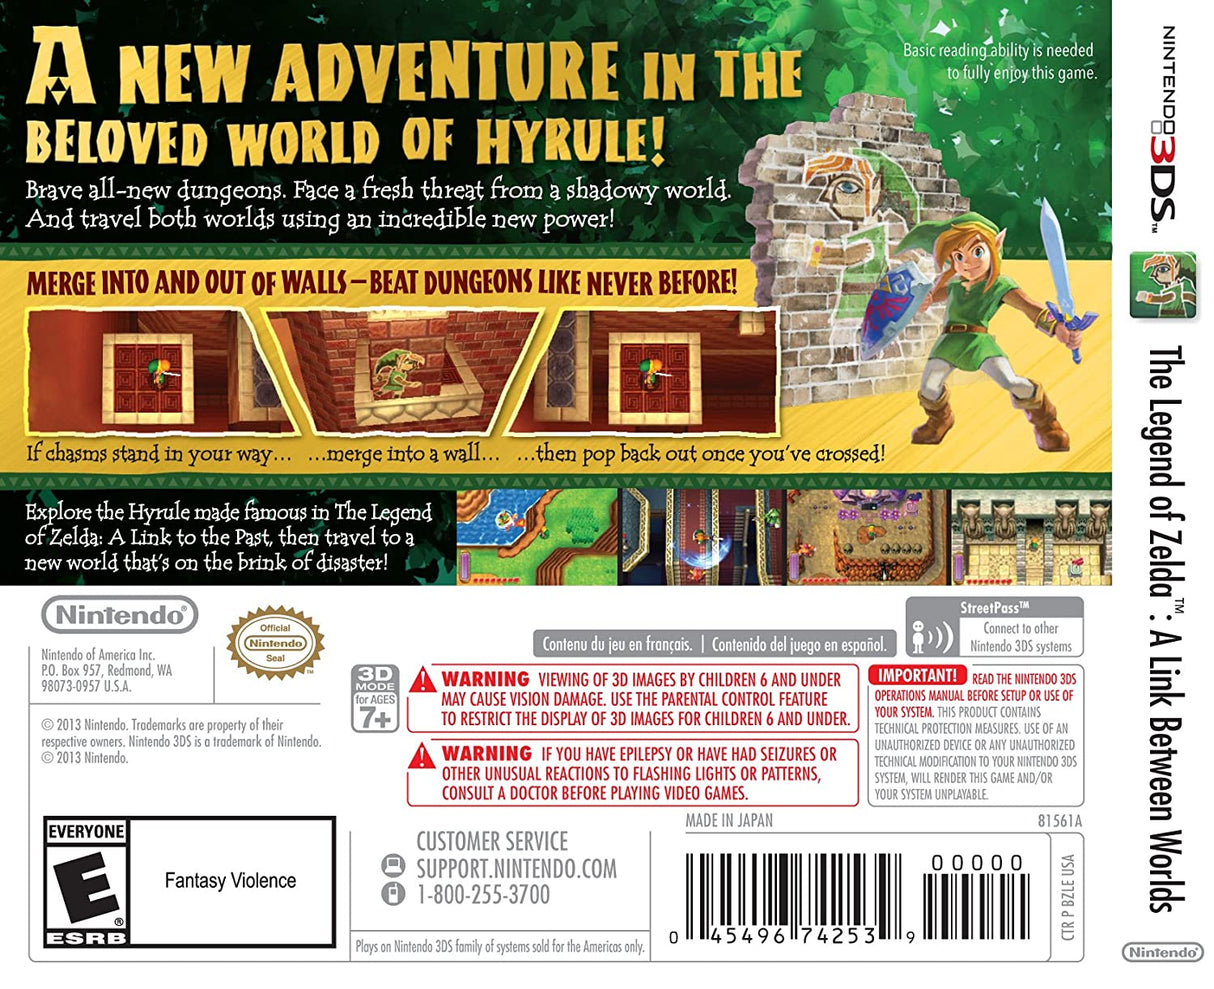 The Legend of Zelda: A Link Between Worlds - [Game Cartridge & Case] Nintendo 3DS